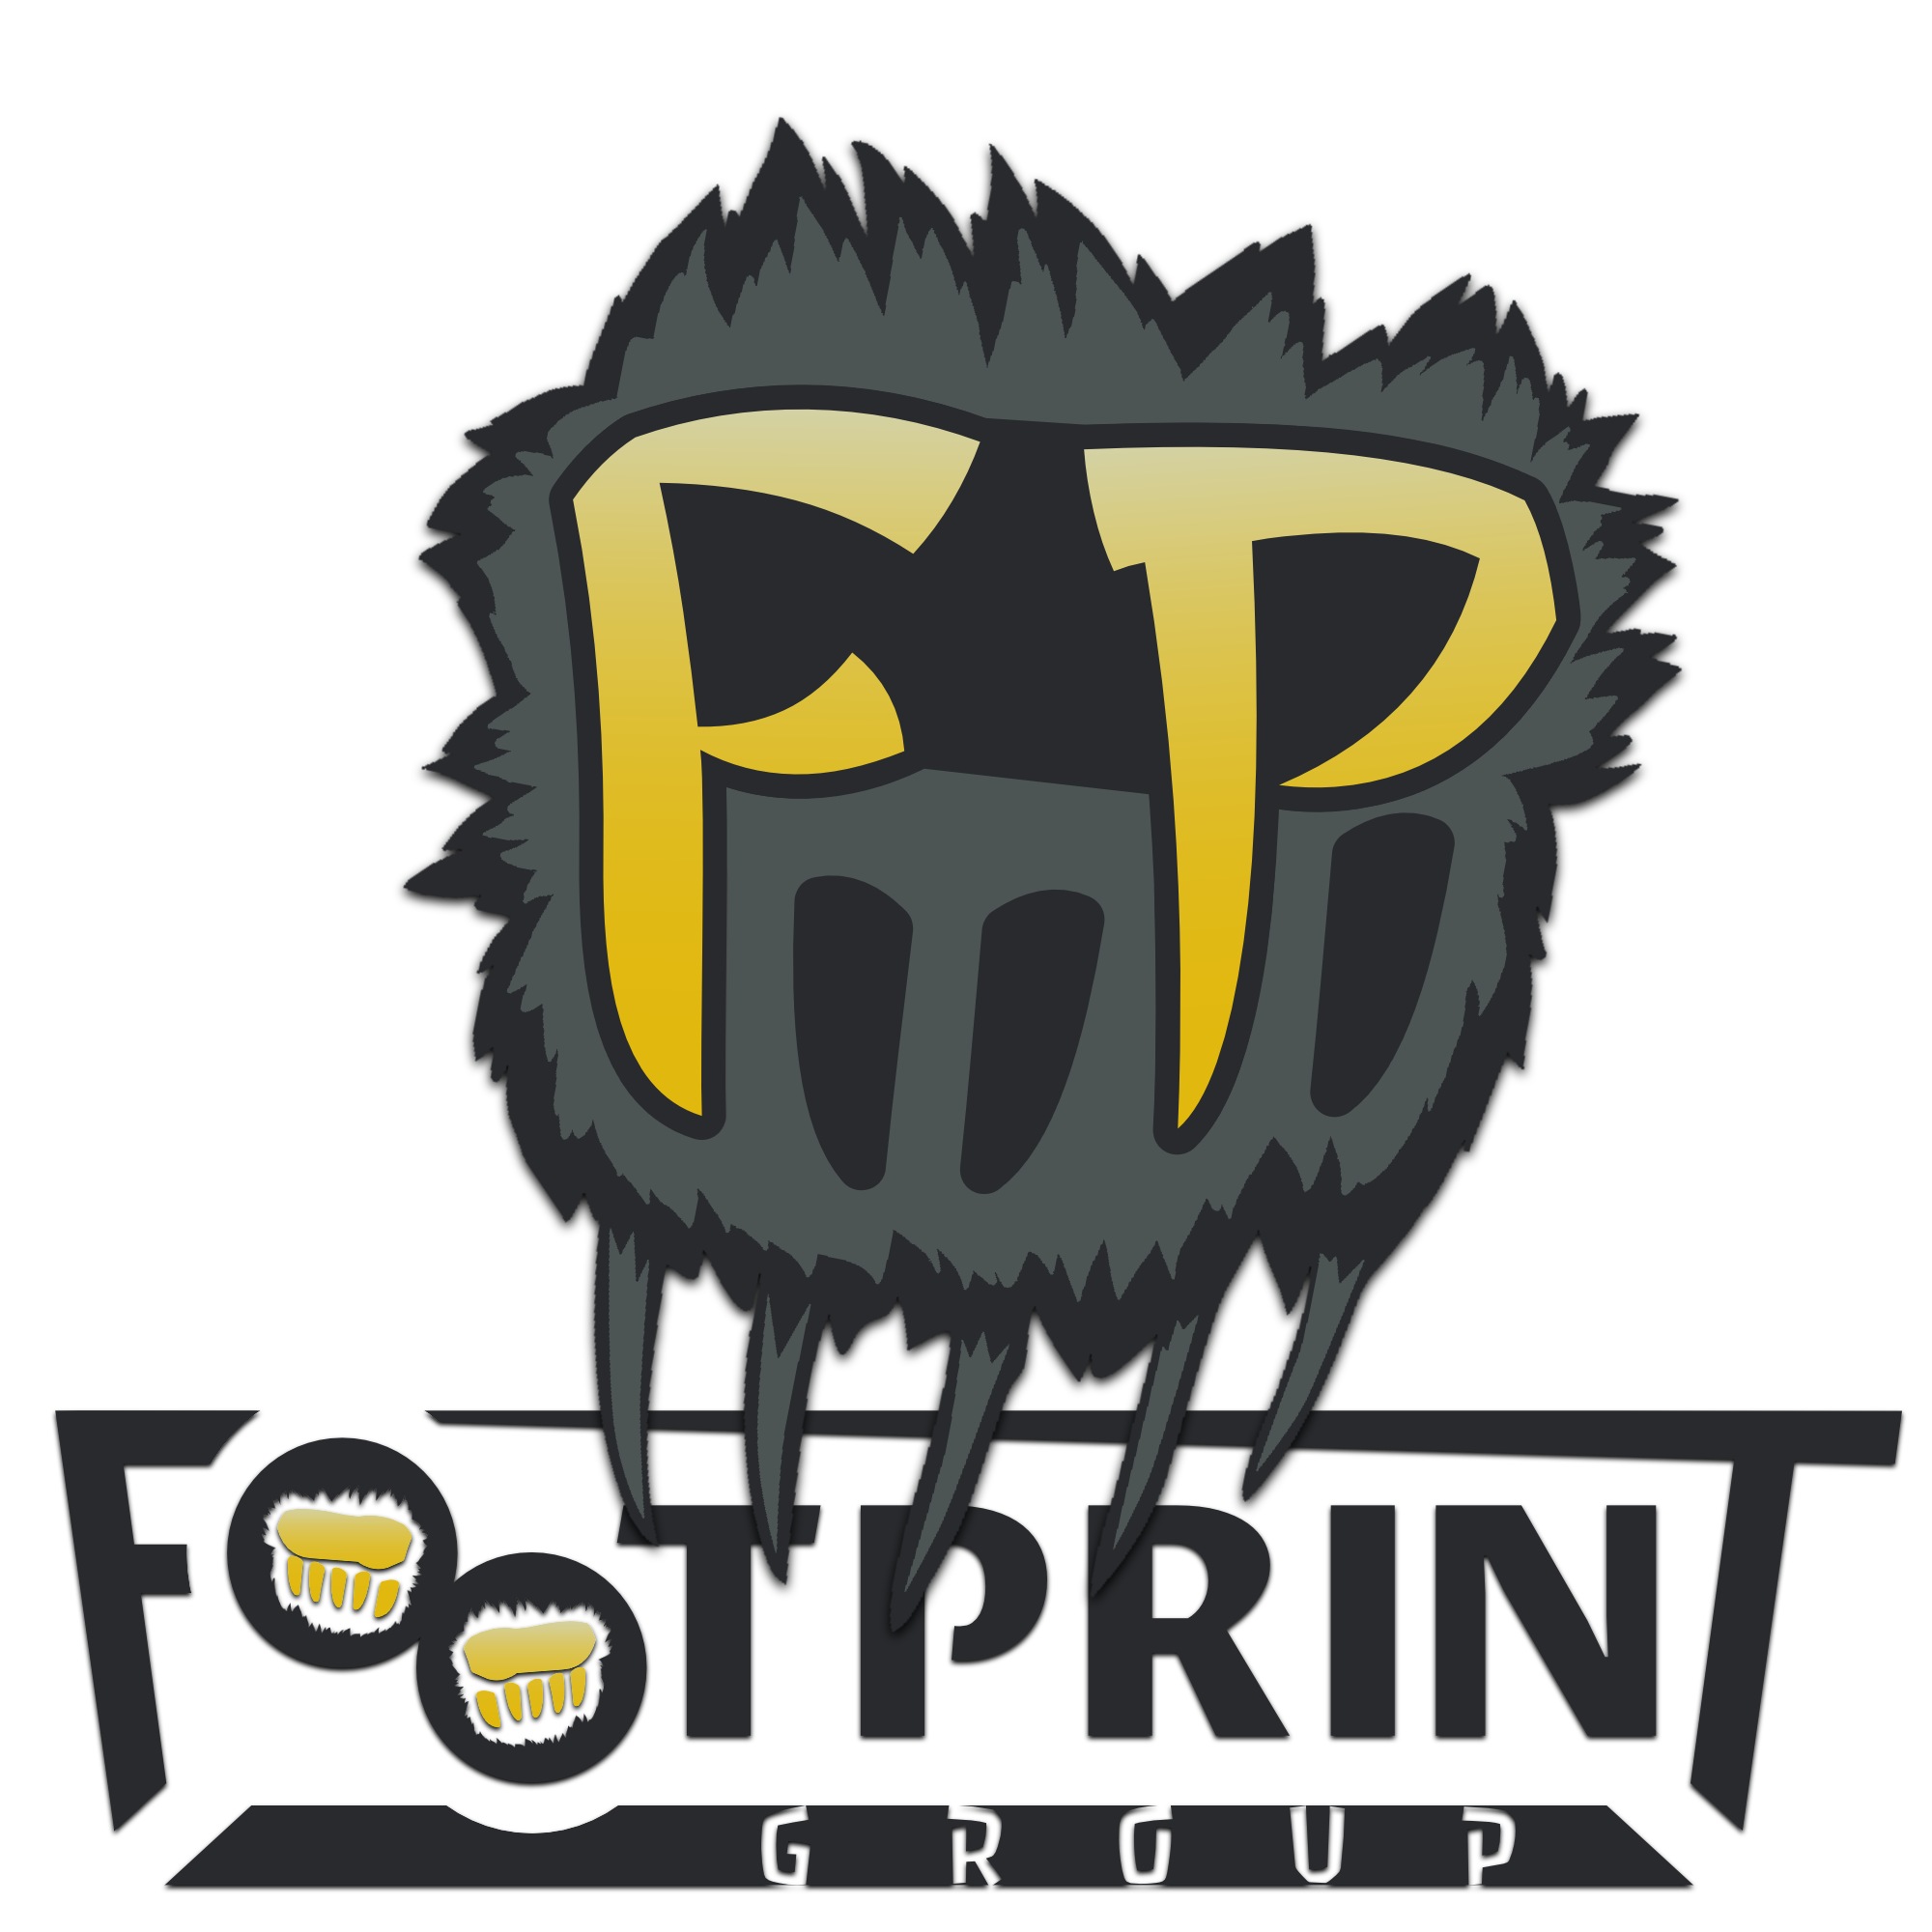 Footprint Group Fabian Schmid